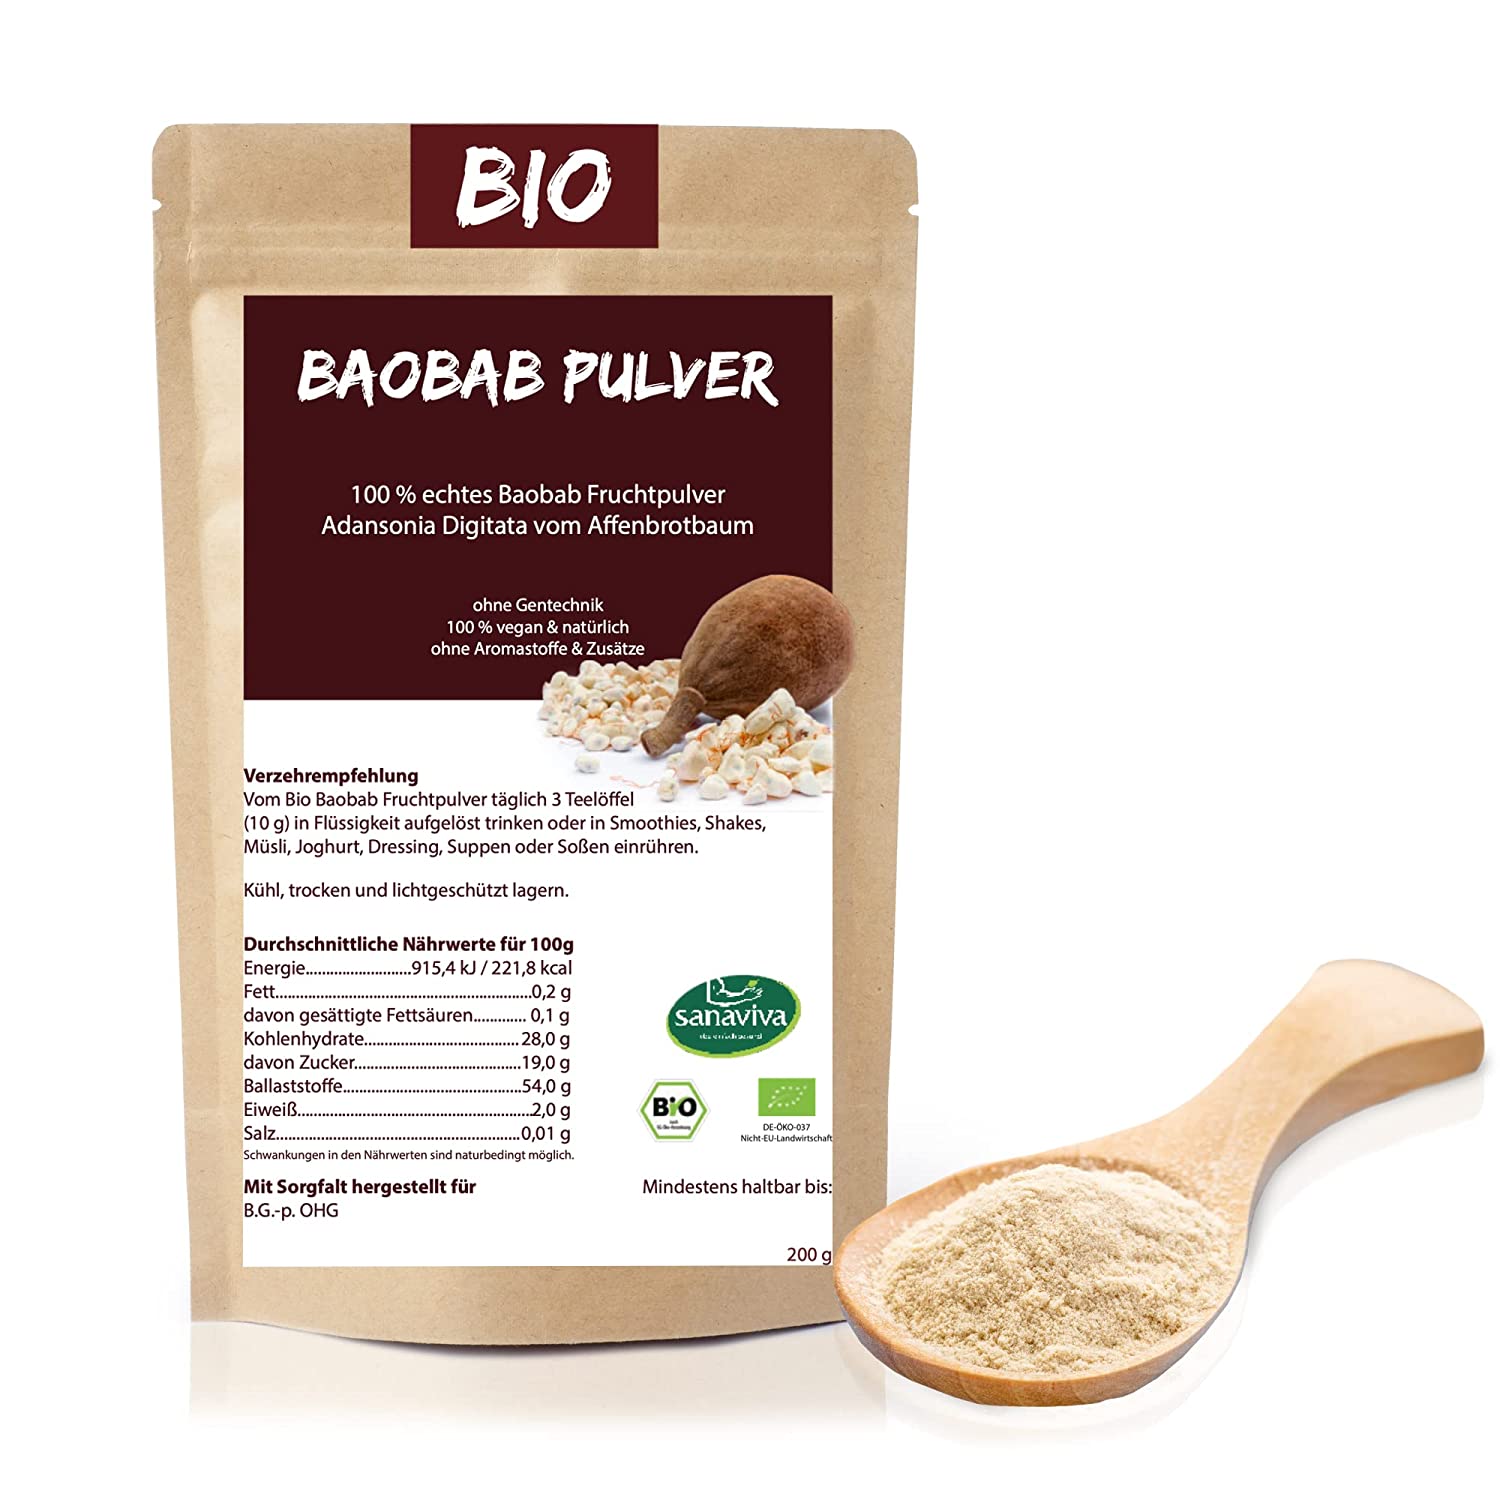 Baobab Bio Pulver sanaviva veganes Superfood - reines Naturpulver reich an Antioxidantien und Ballaststoffen